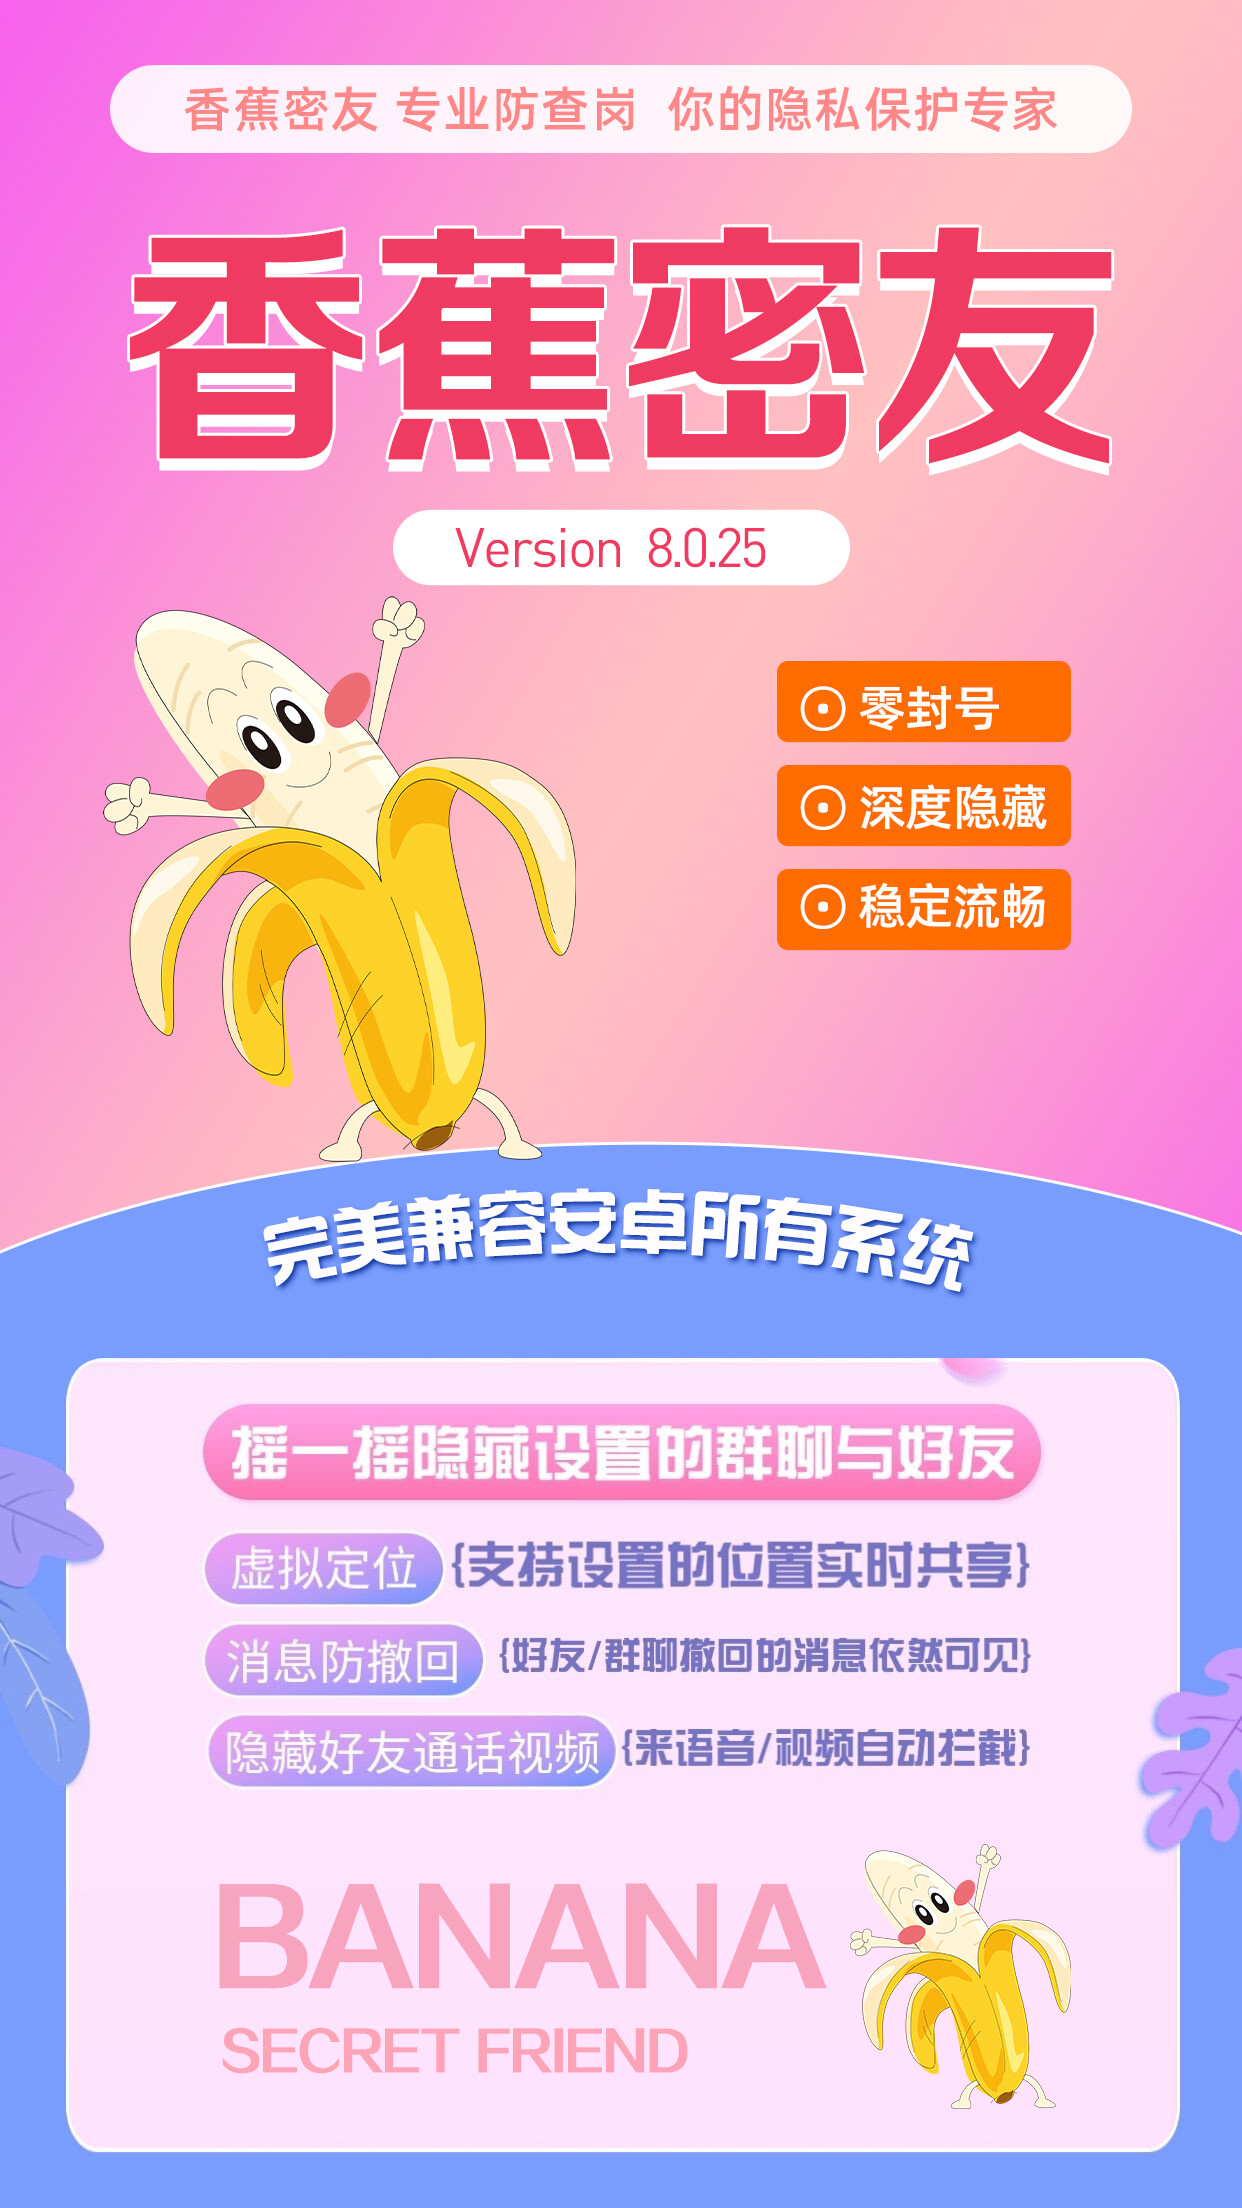 【免费体验】香蕉密友微信工具,香蕉密友封号吗